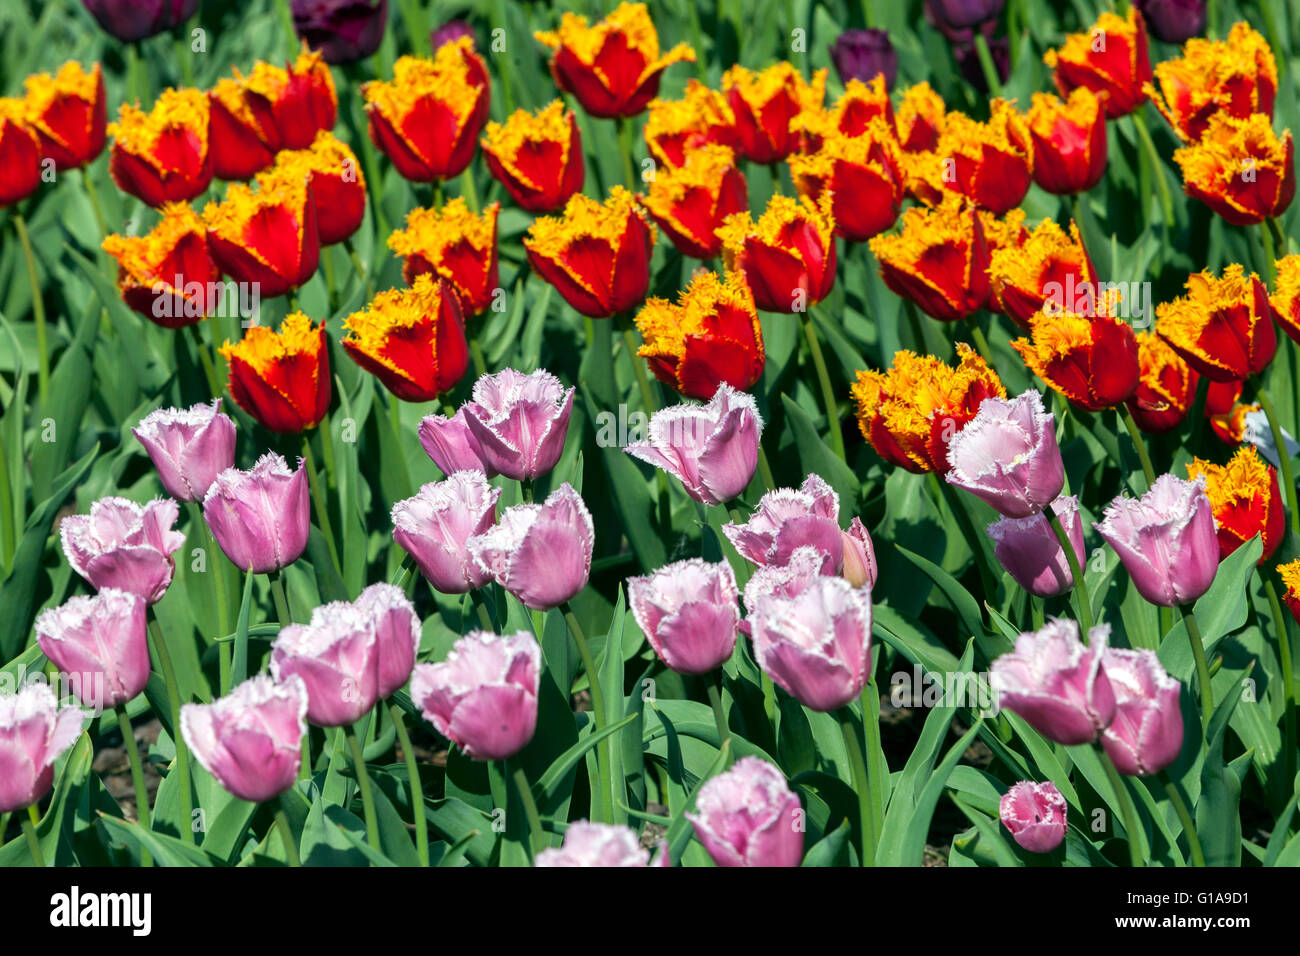 Tulipes fleuries jardin, rouge jaune Tulipa 'Palmares' Rose Tulipa 'Cummins' tulipes frangées fleurs mélangées tulipes rouge jaune rose dans un parterre de fleurs coloré Banque D'Images